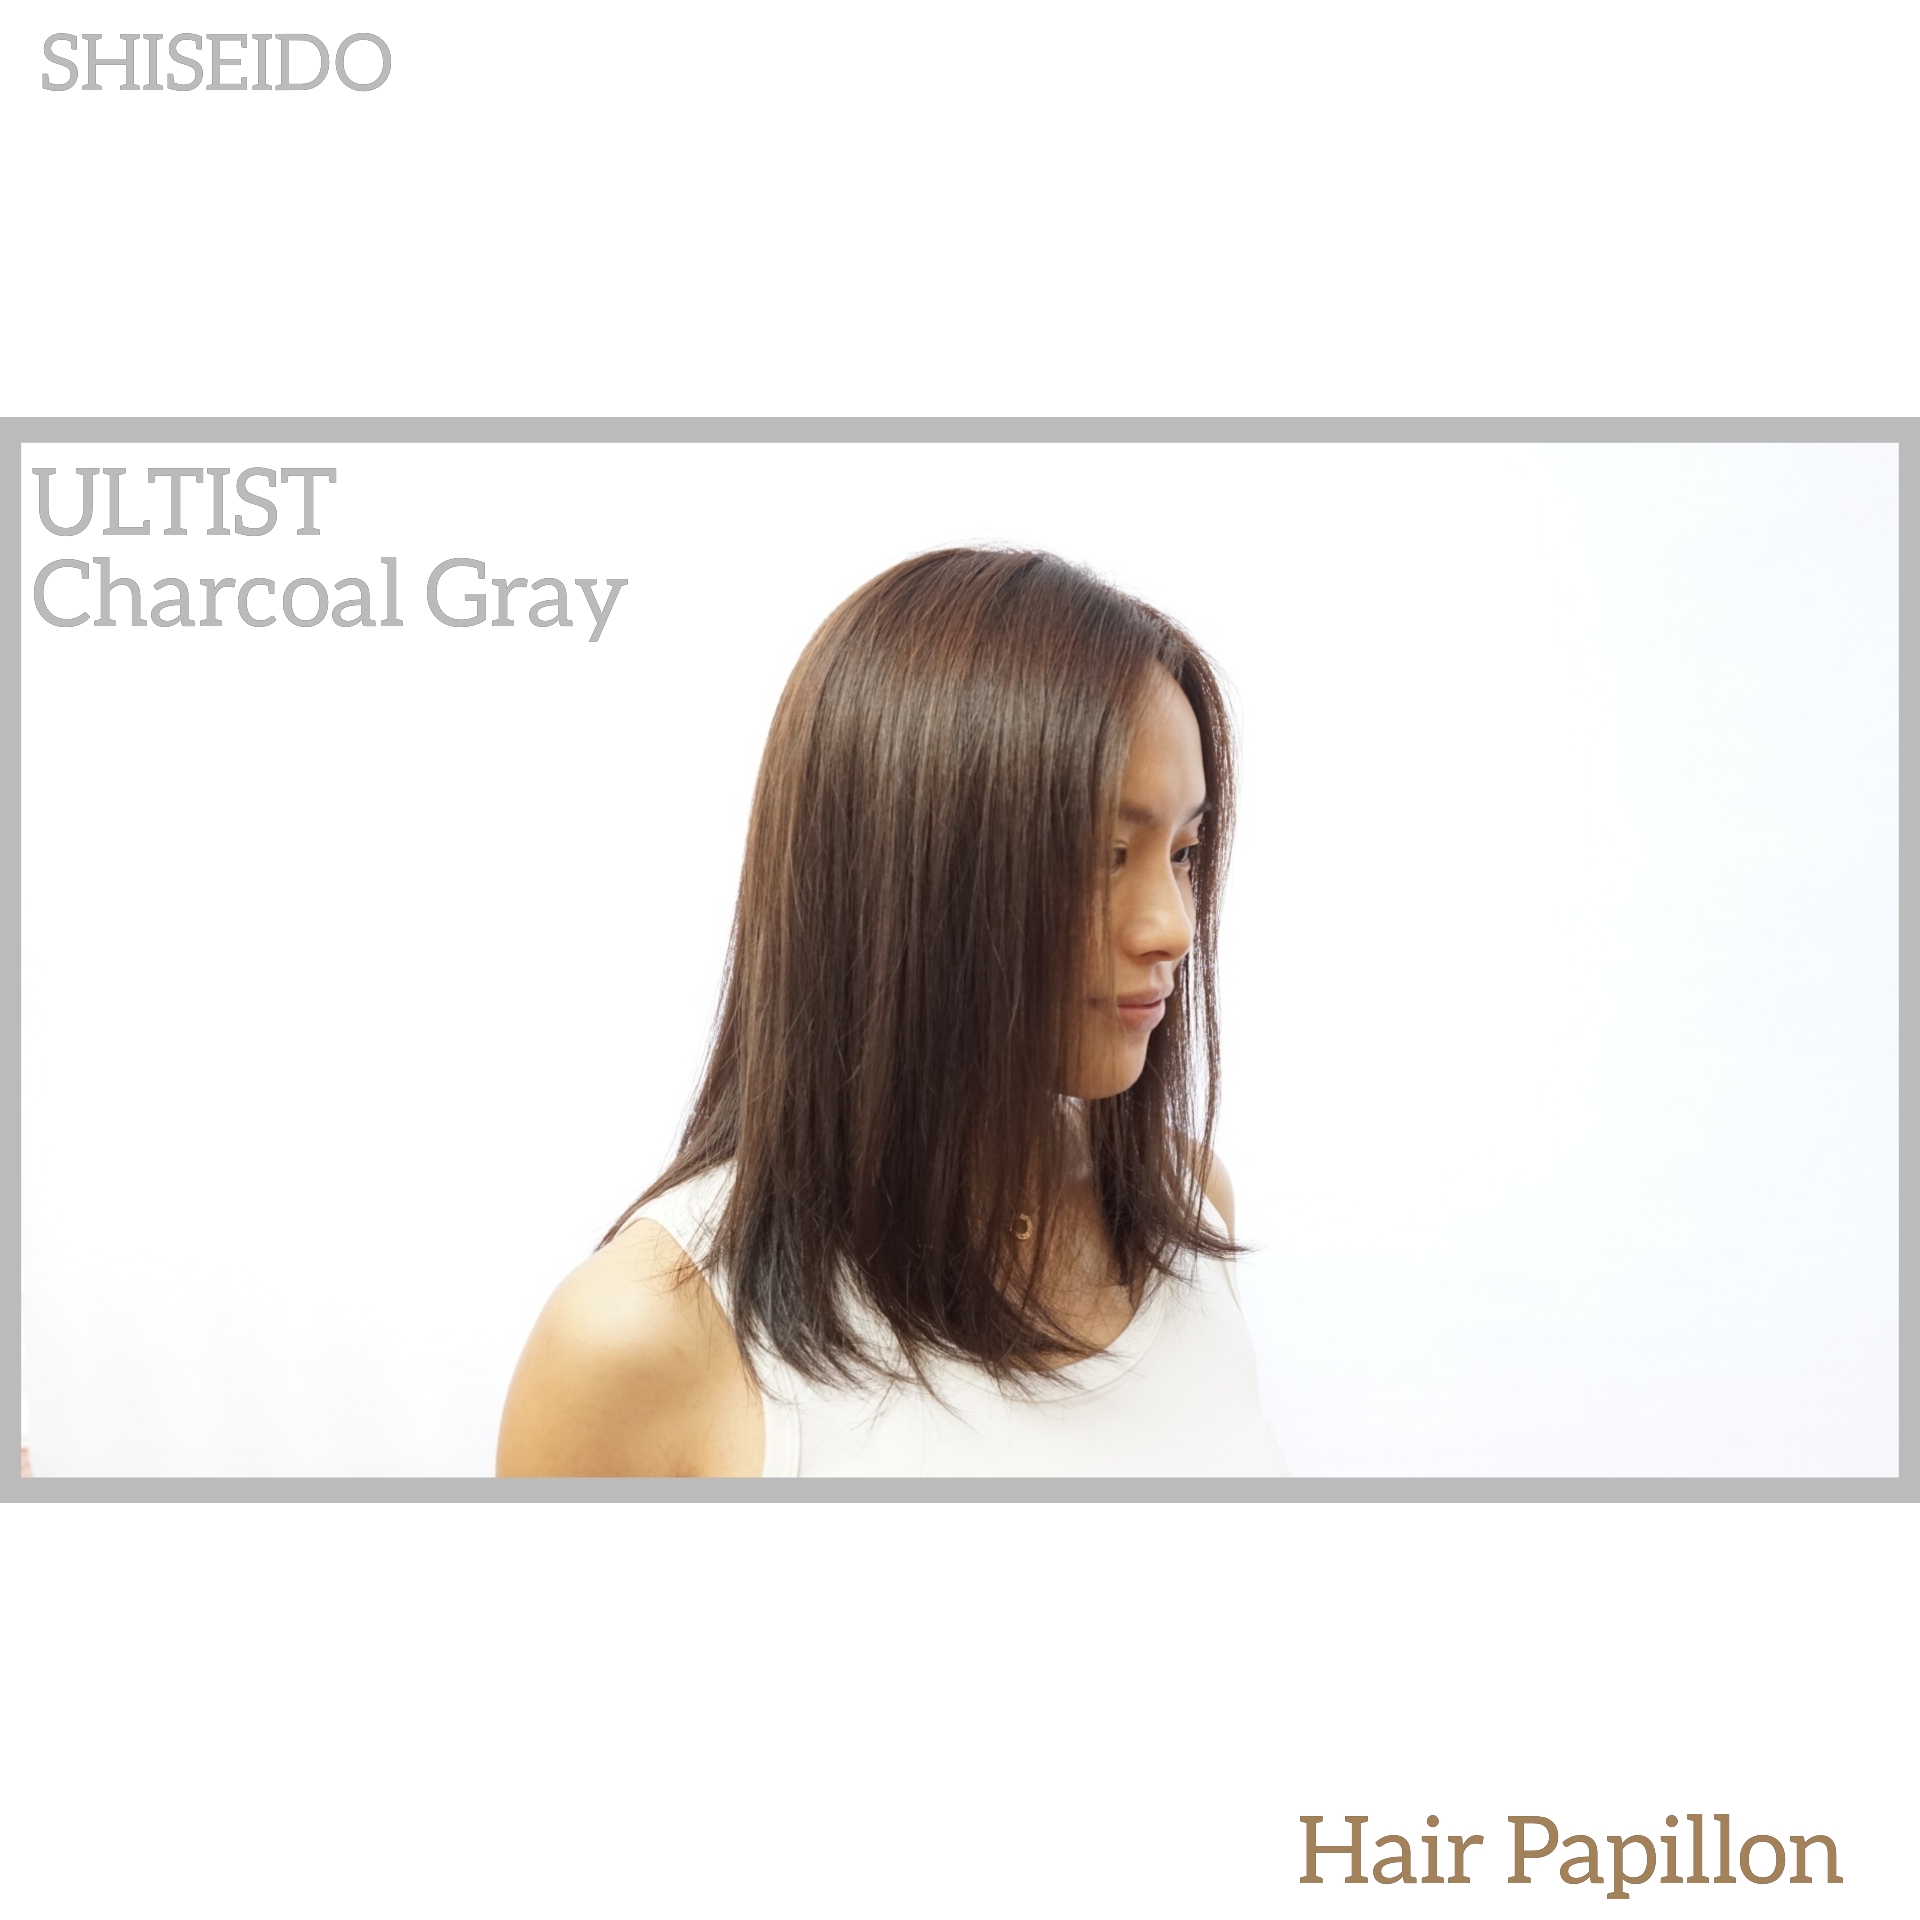 作品參考 / 最新消息:shiseido color CG